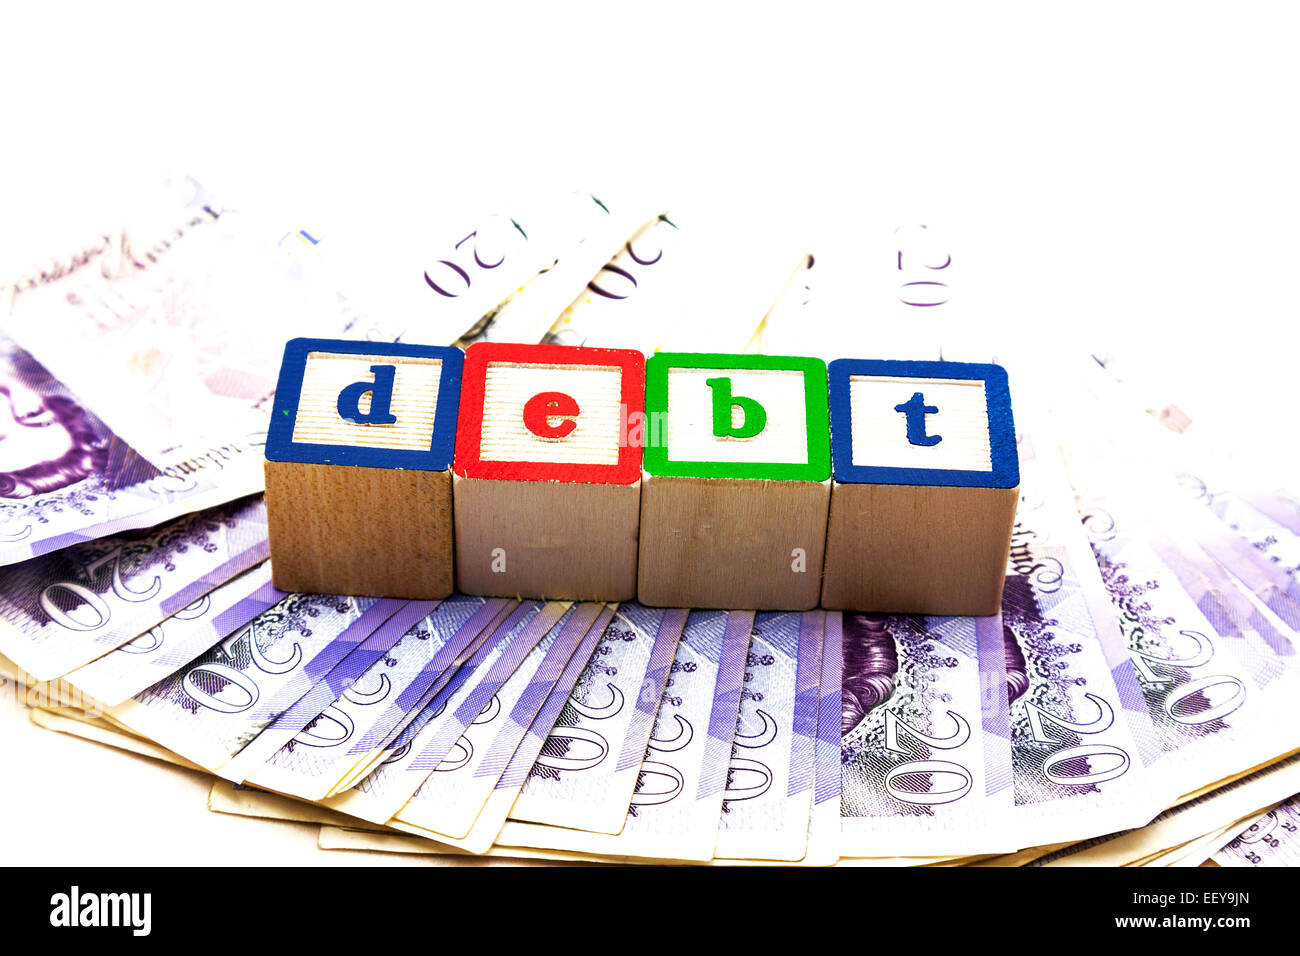 Schulden Geld Konzept Welt Schulden Kredit Darlehen skint Konkurs Insolvenz textfreiraum weißen Hintergrund ausschneiden Stockfoto